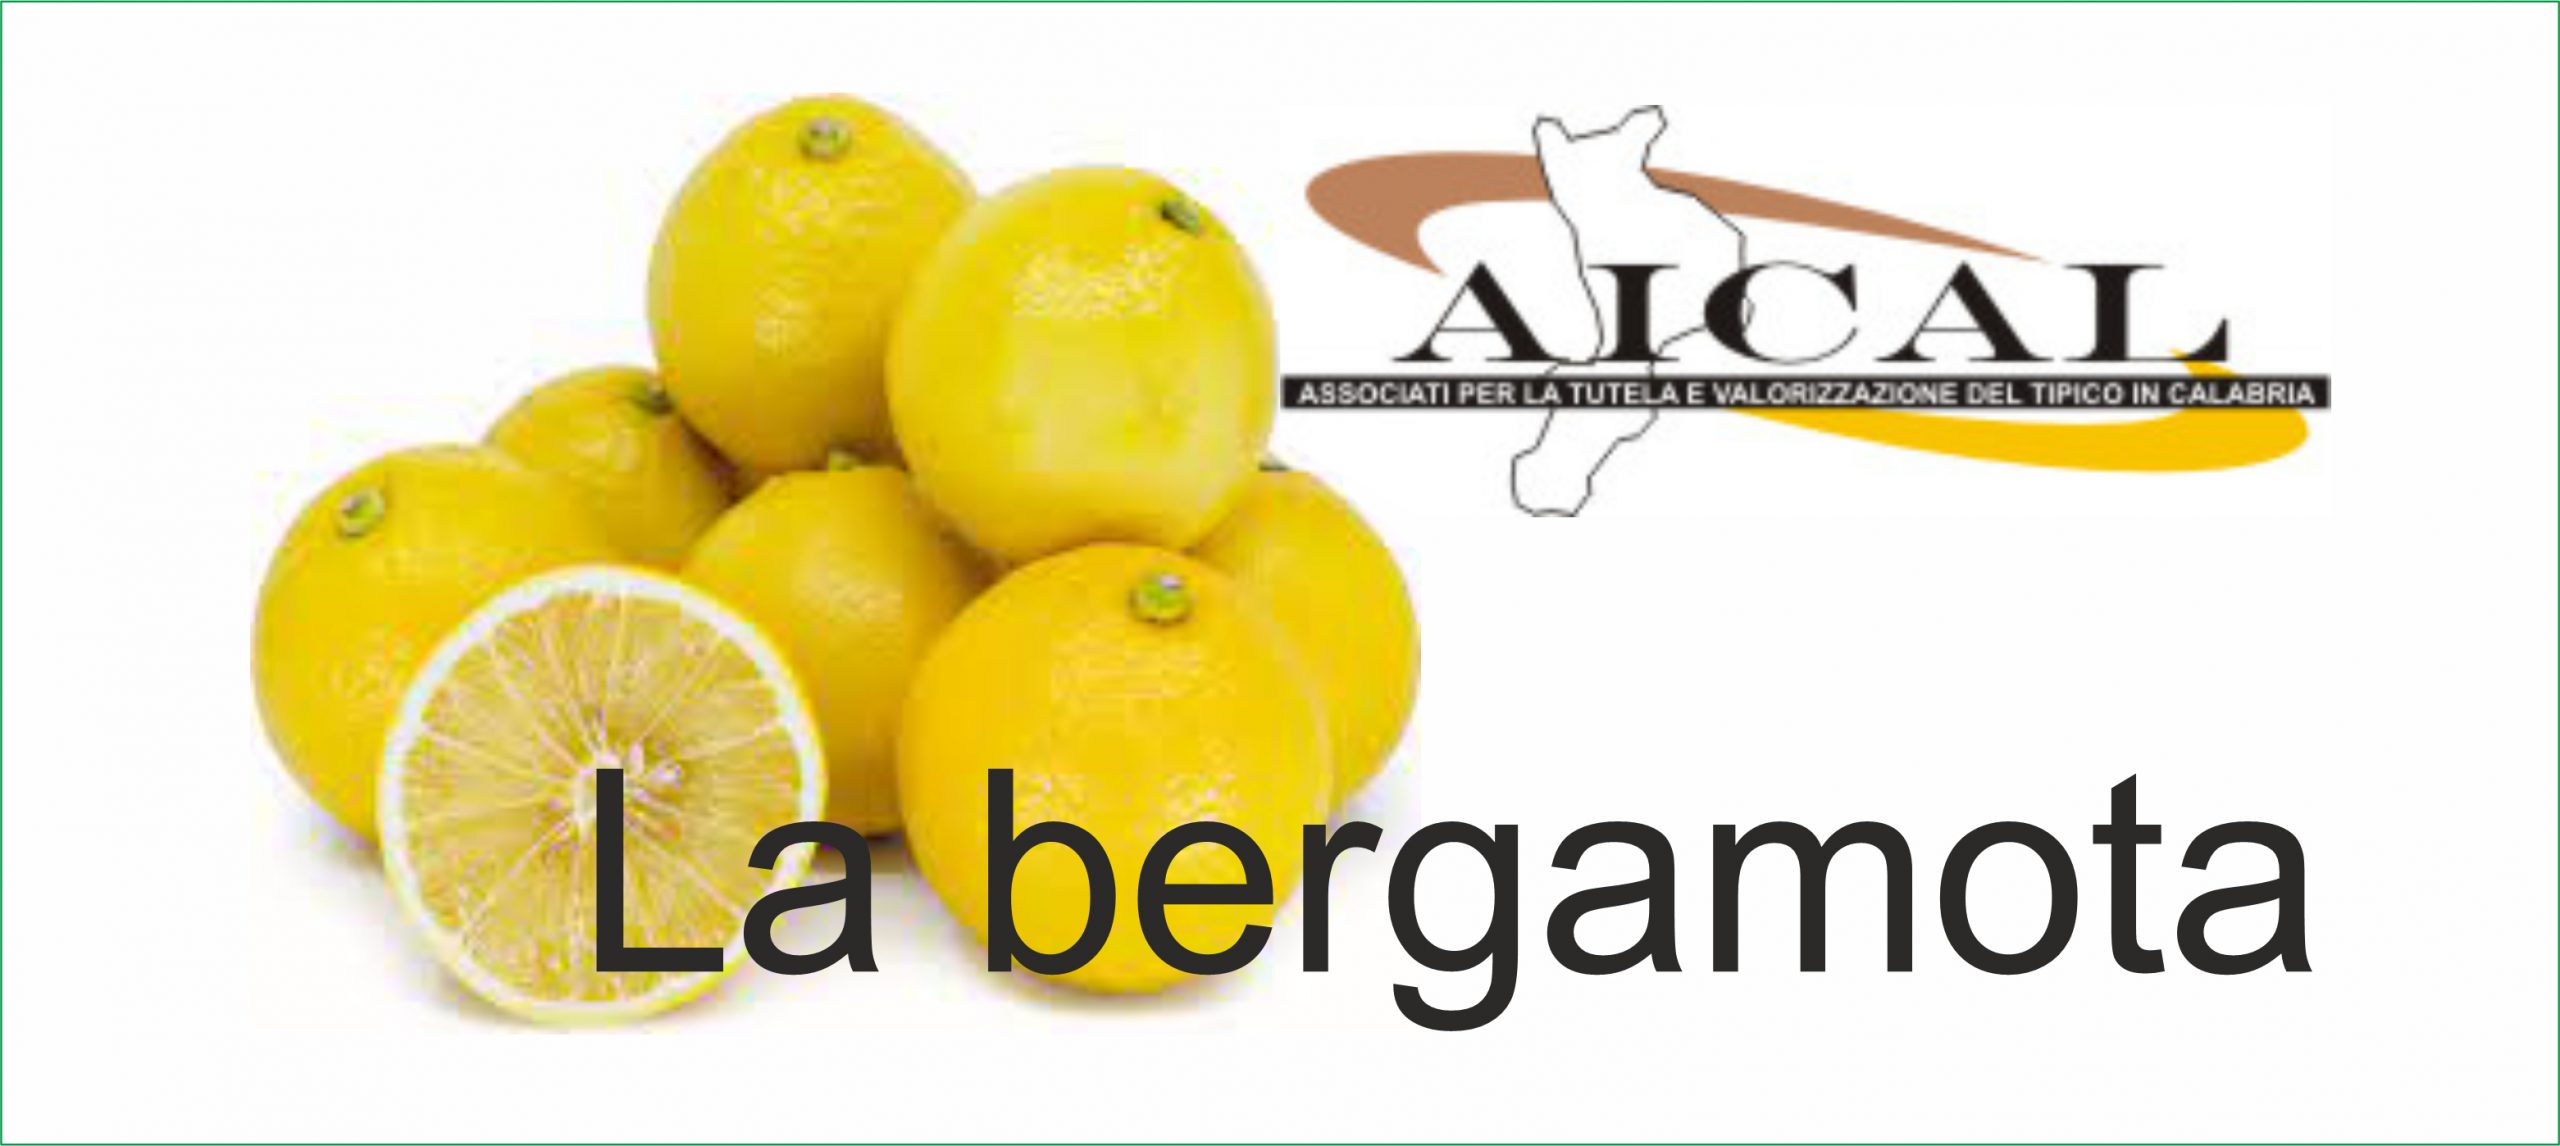 Bergasterol et Bergastatina sont les produits naturels de la bergamote